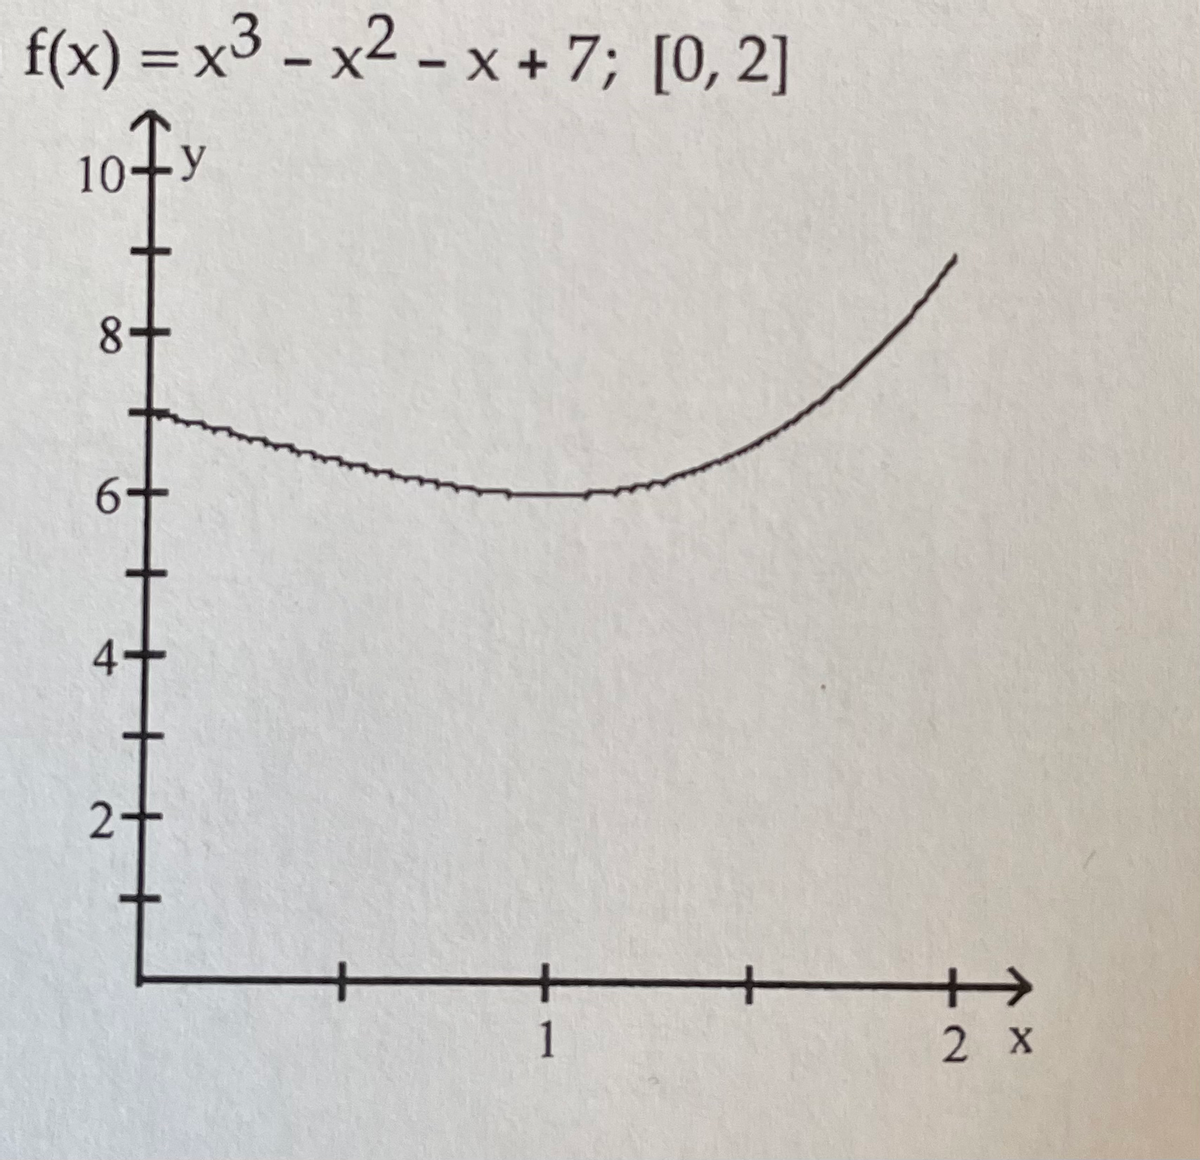 f(x) = x3 - x2 - x + 7; [0, 2]
10
8+
2+
+
2 X
1
